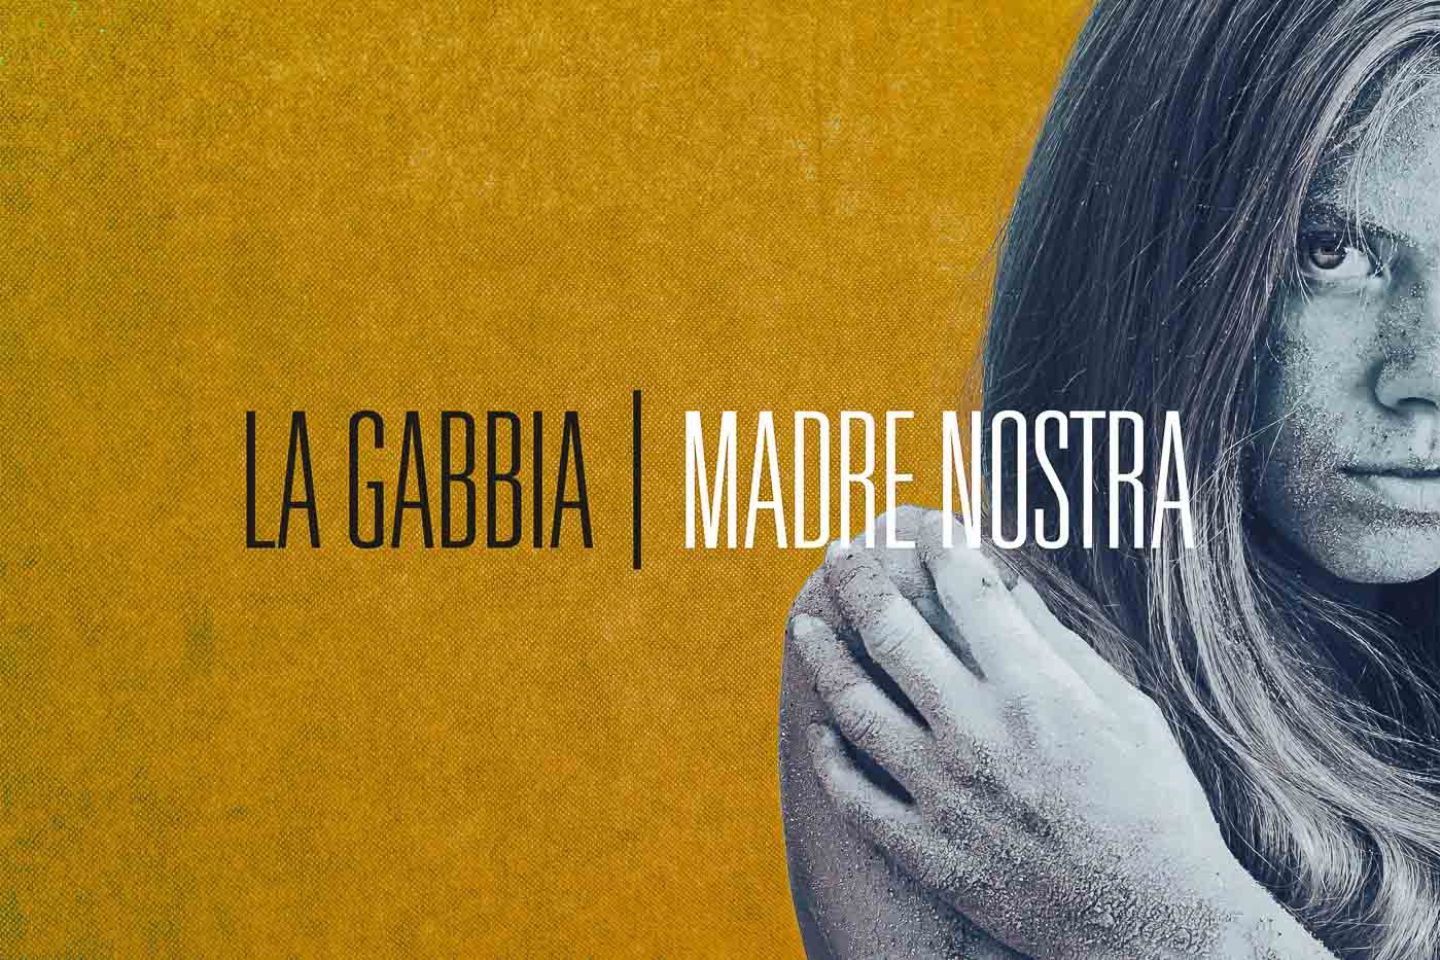 La Gabbia “Madre Nostra” (You Can’t Records, 2019)